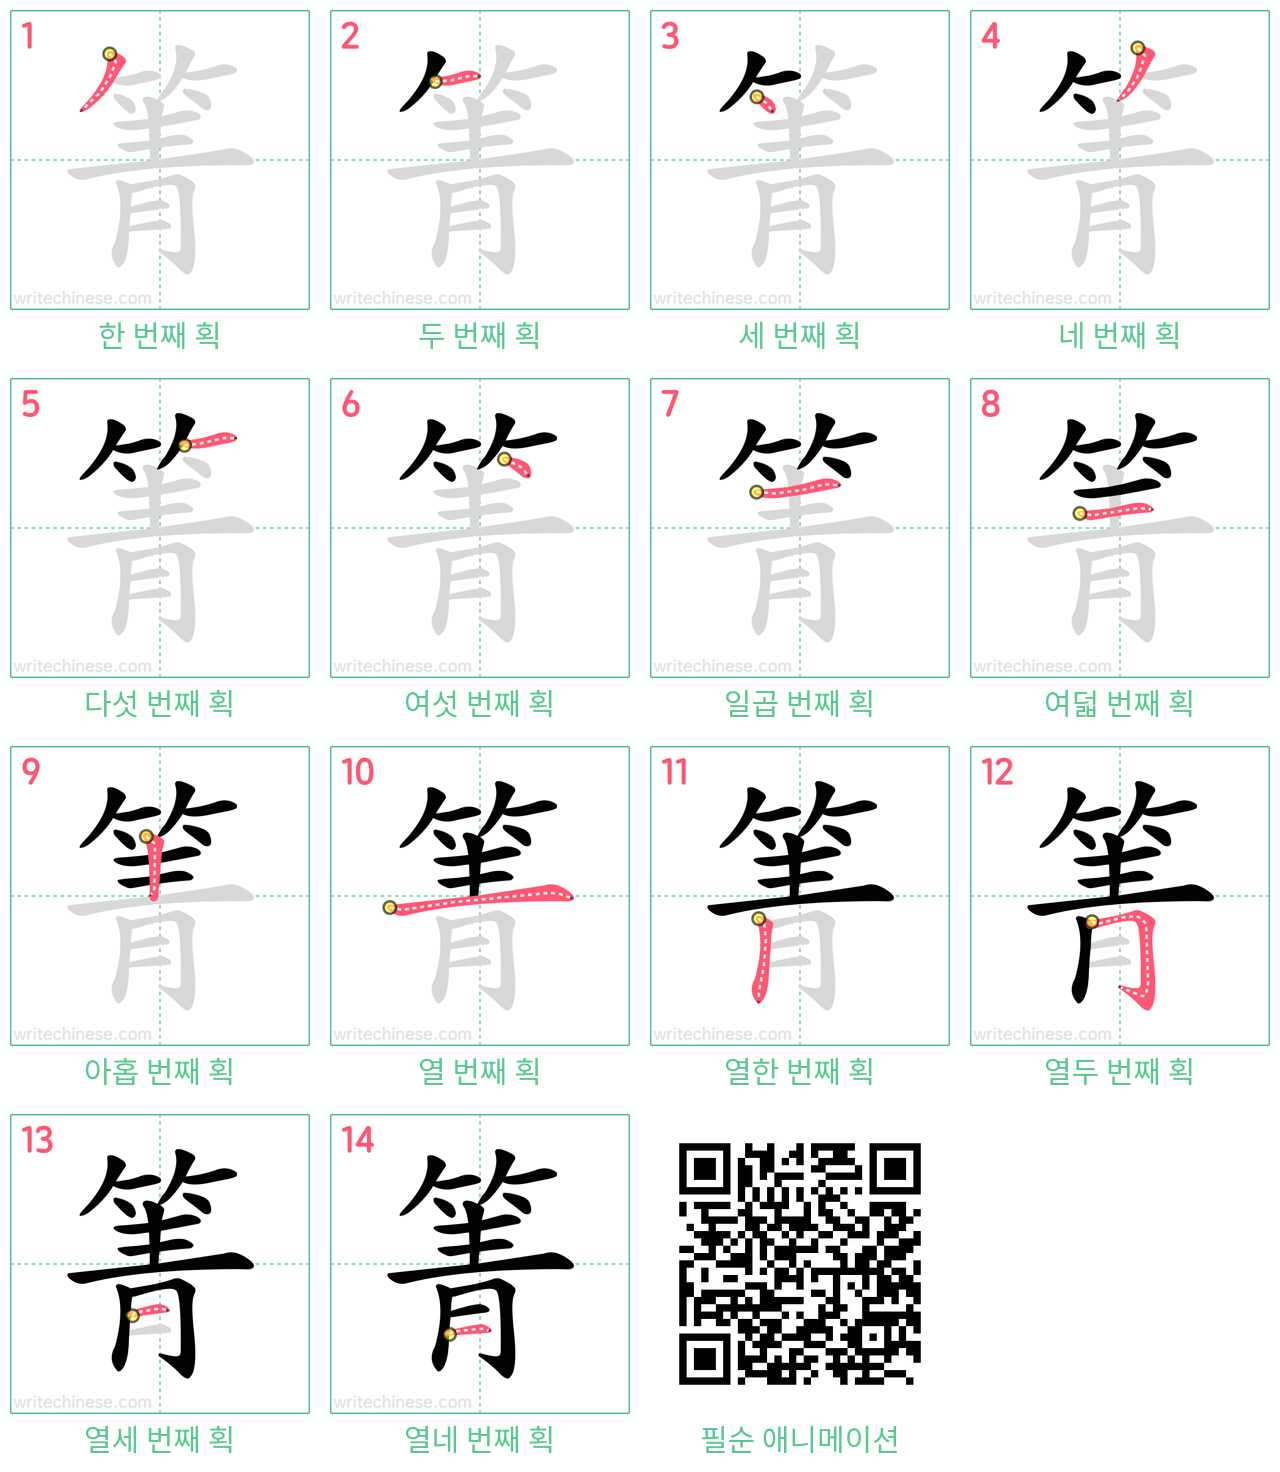 箐 step-by-step stroke order diagrams